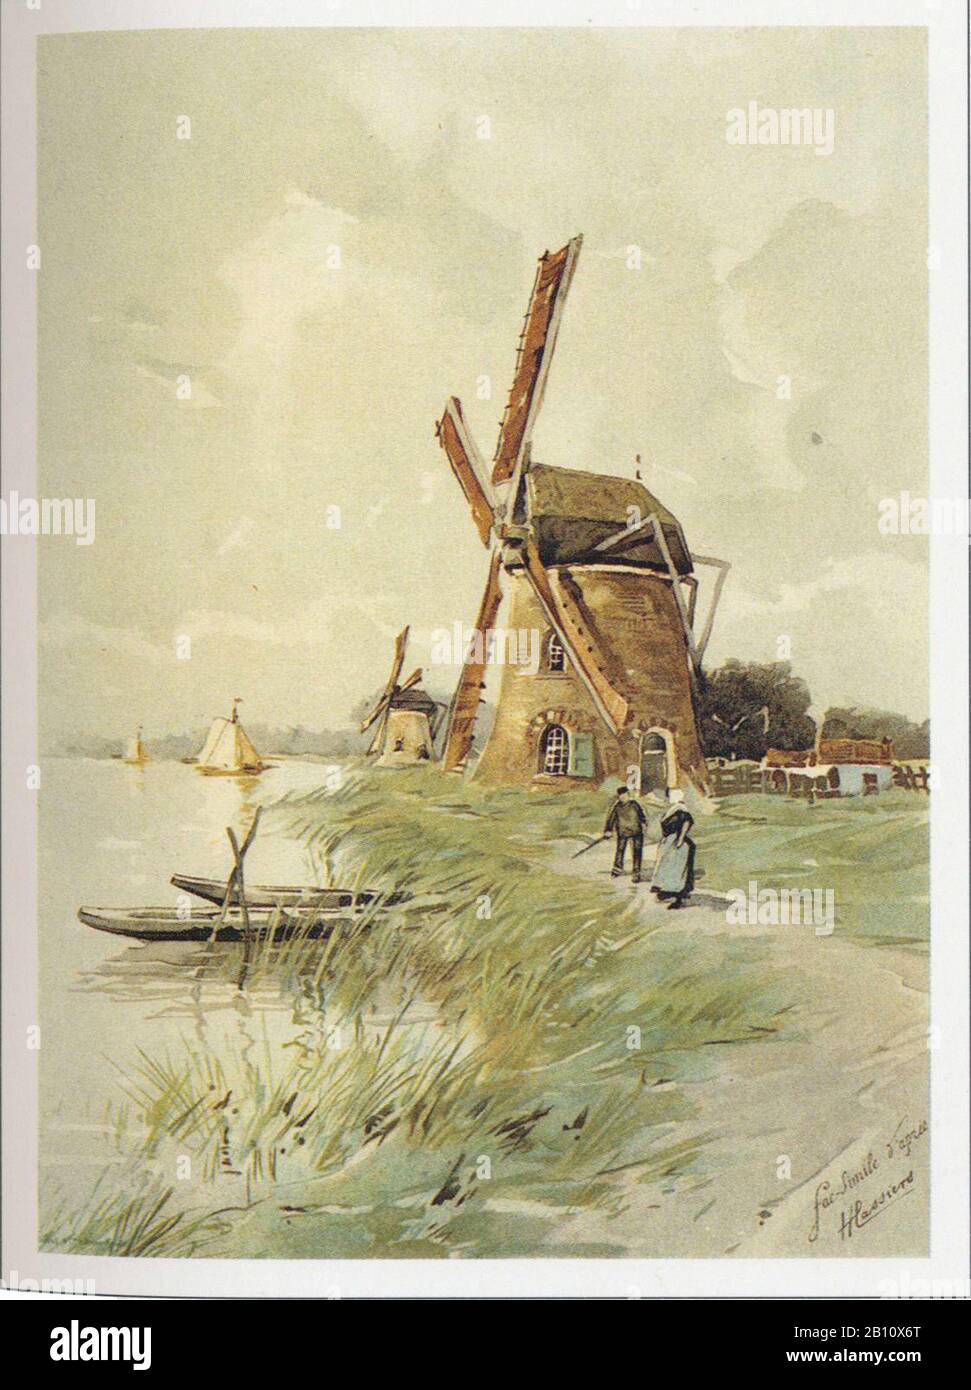 Watermolen a - Ilustración de Henri Cassers (1858 - 1944) Foto de stock